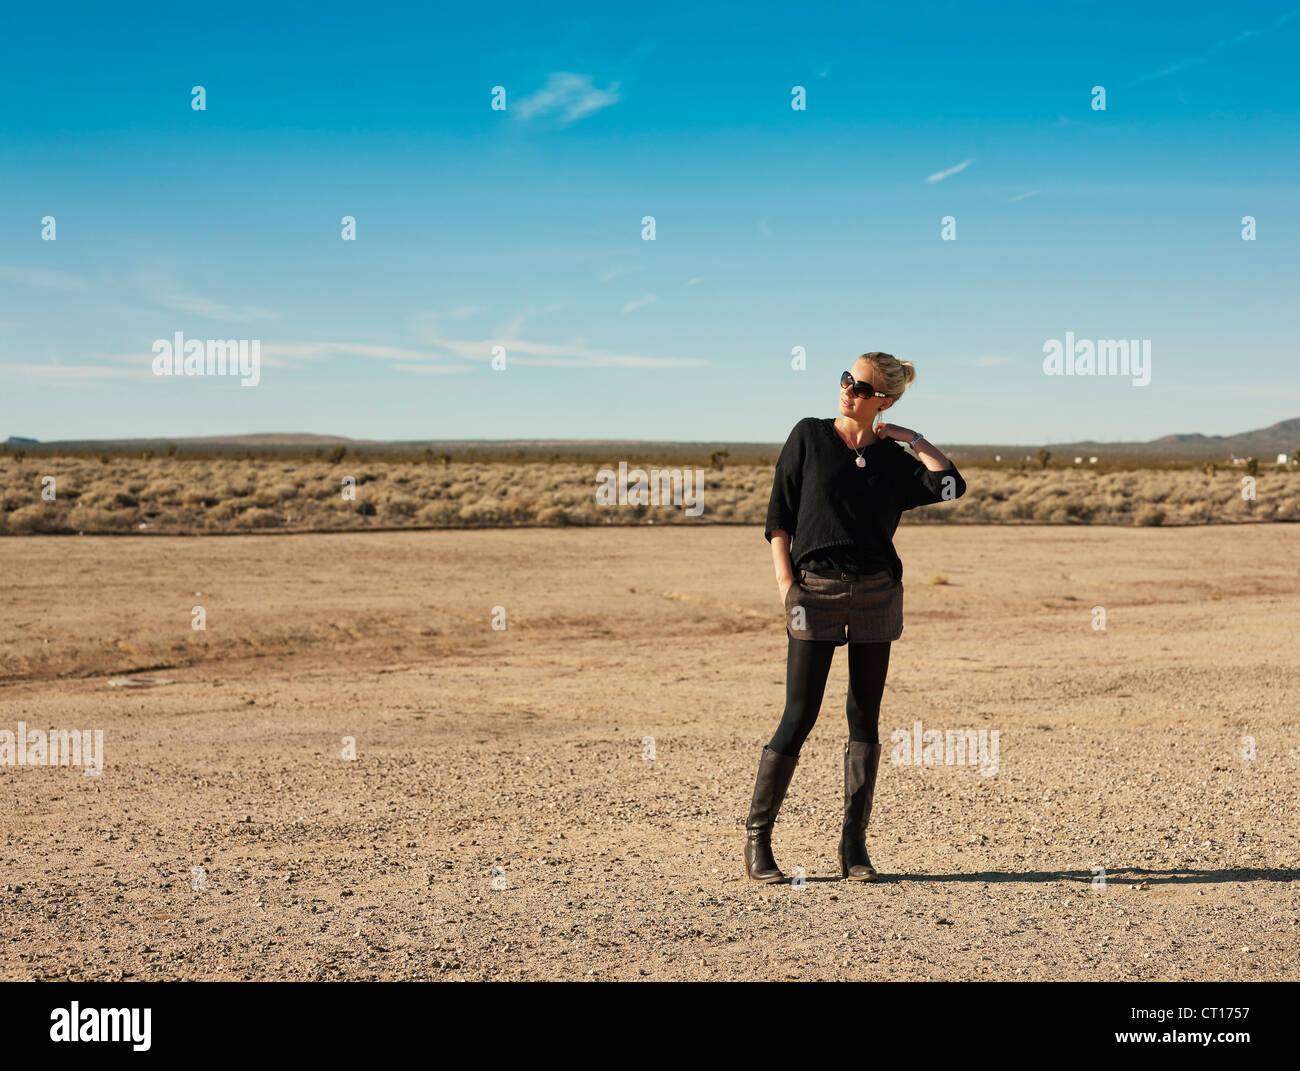 Woman walking in dry field Stock Photo